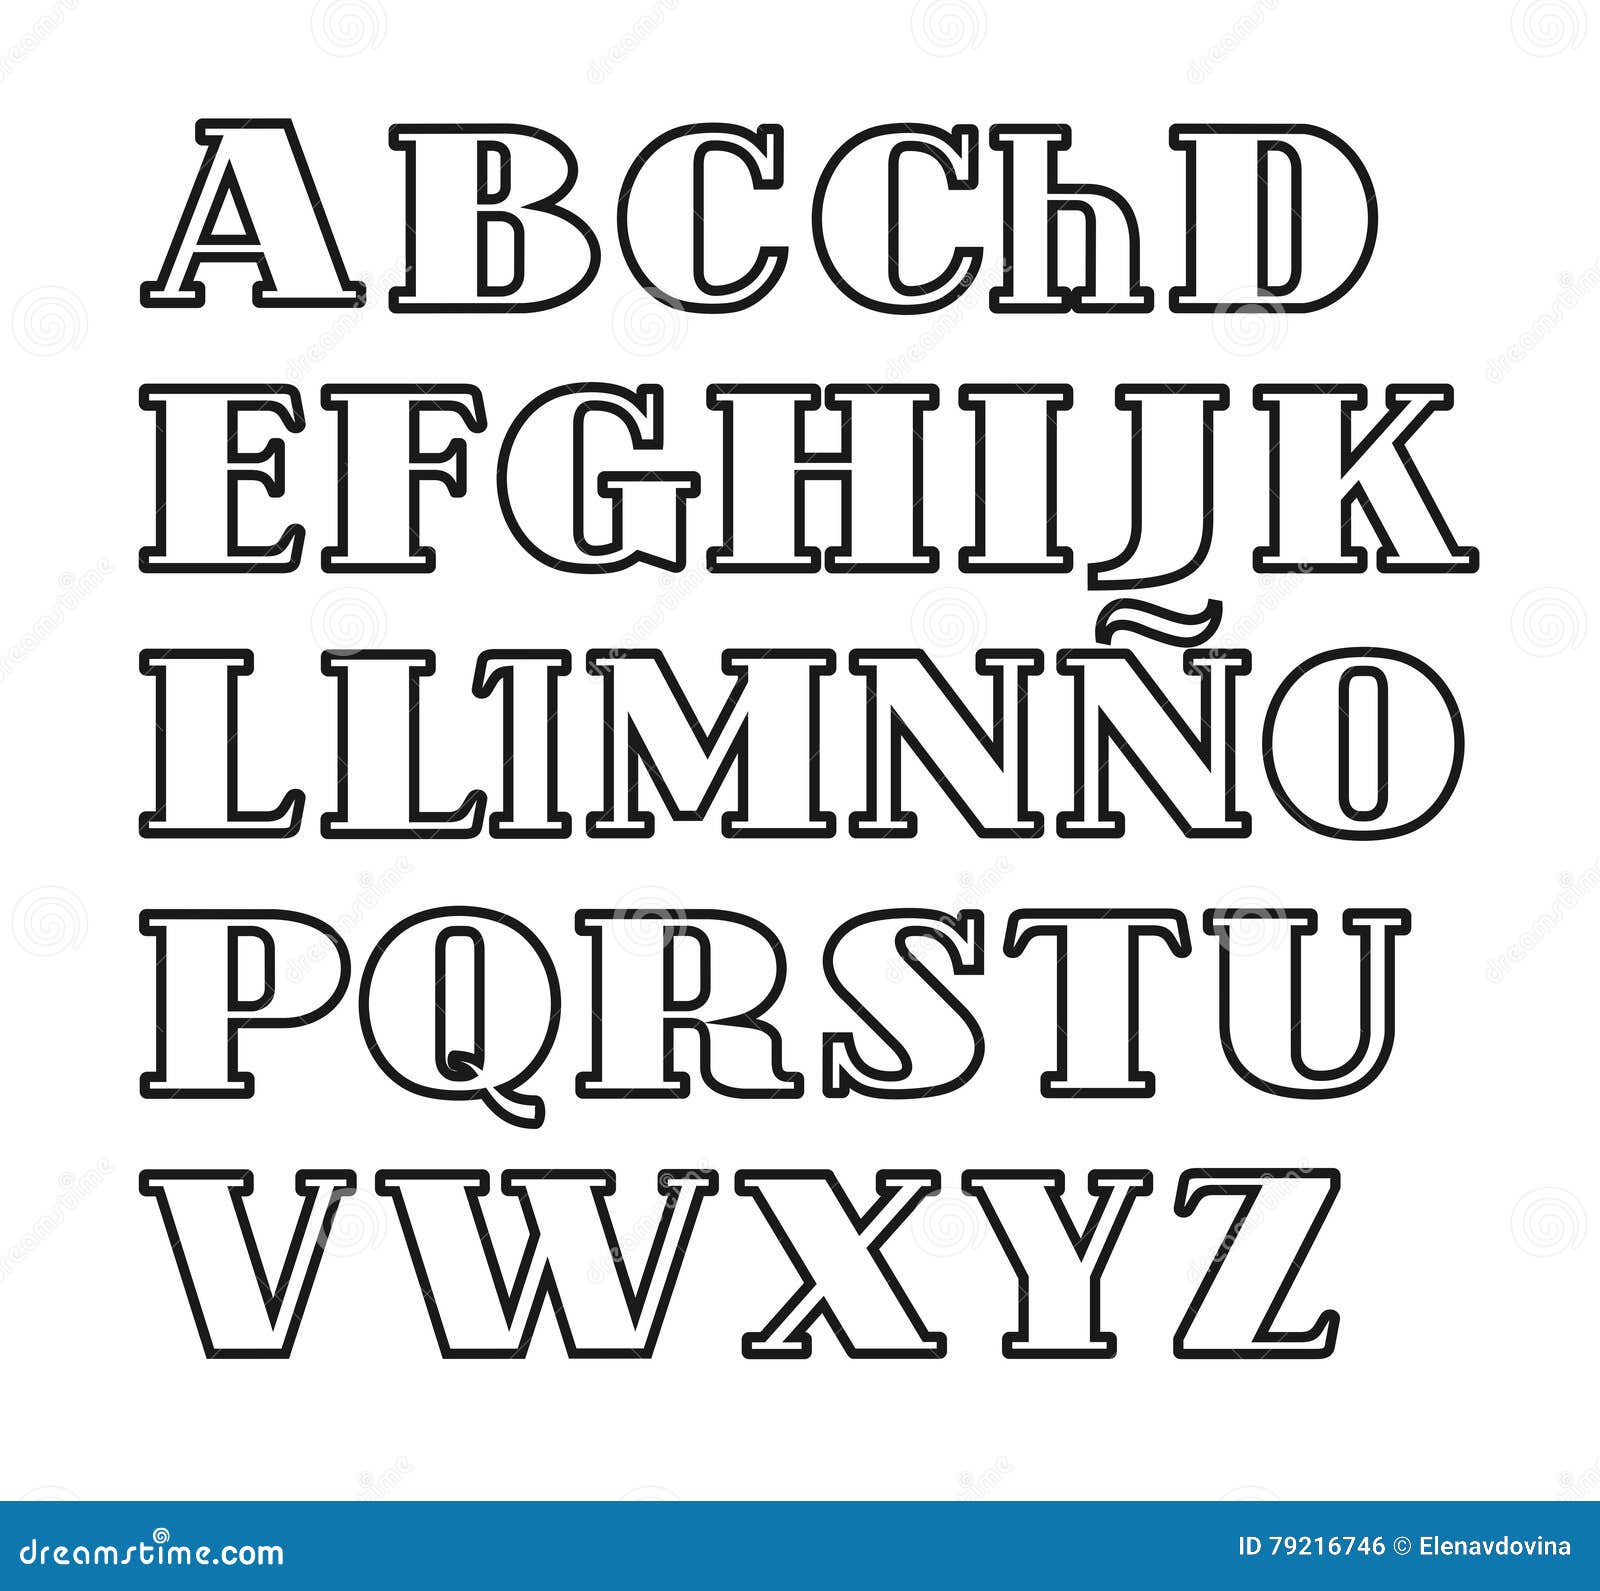 Featured image of post Letras Alfabeto En Espa ol Si quieres escuchar los sonidos de cada una de las letras y aprender algunas palabras nuevas mira